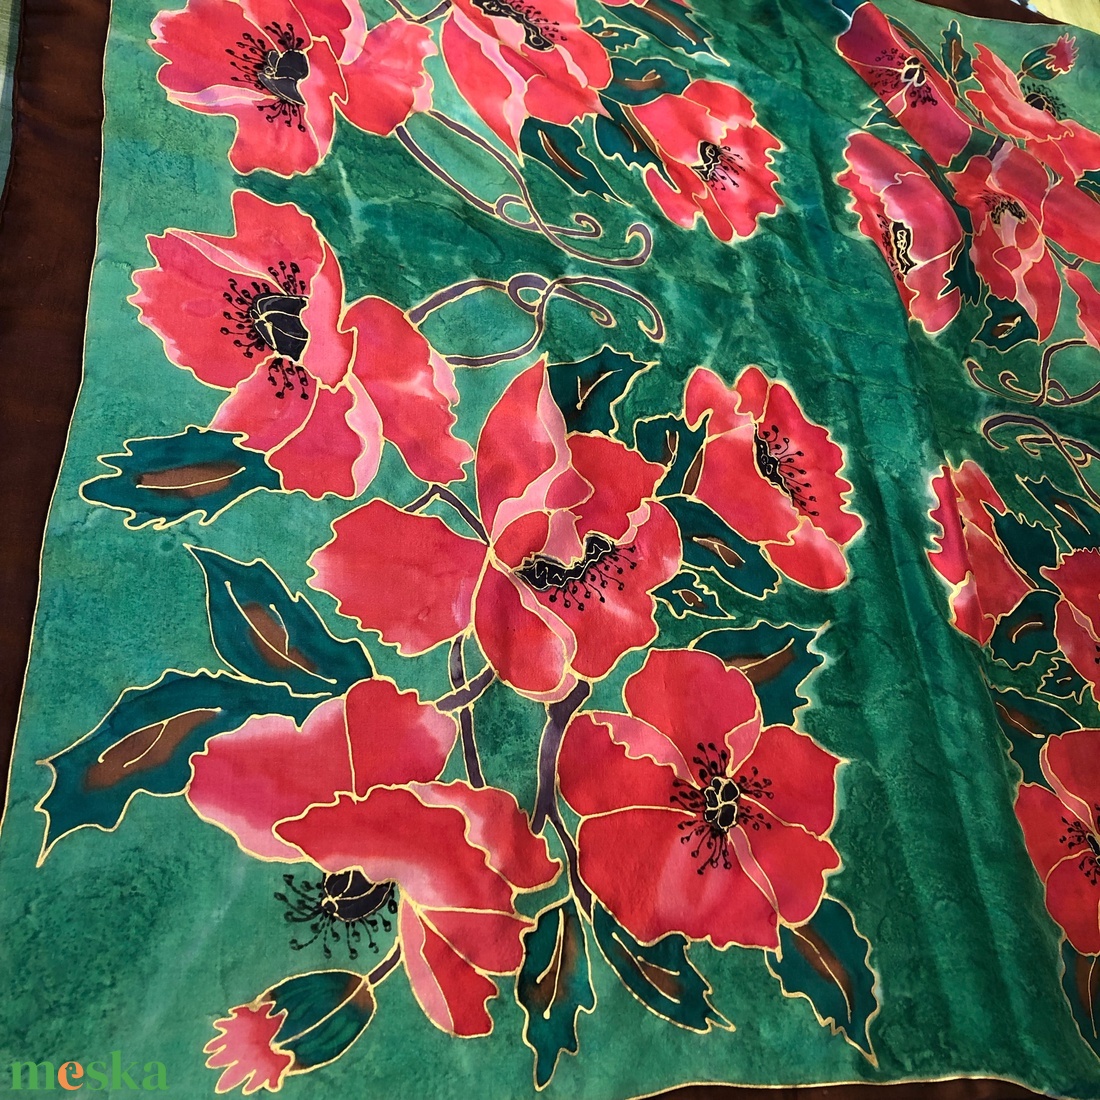 Piros pipacsos nagyméretű őszi kézzel festett selyemkendő sál - ruha & divat - sál, sapka, kendő - kendő - Meska.hu